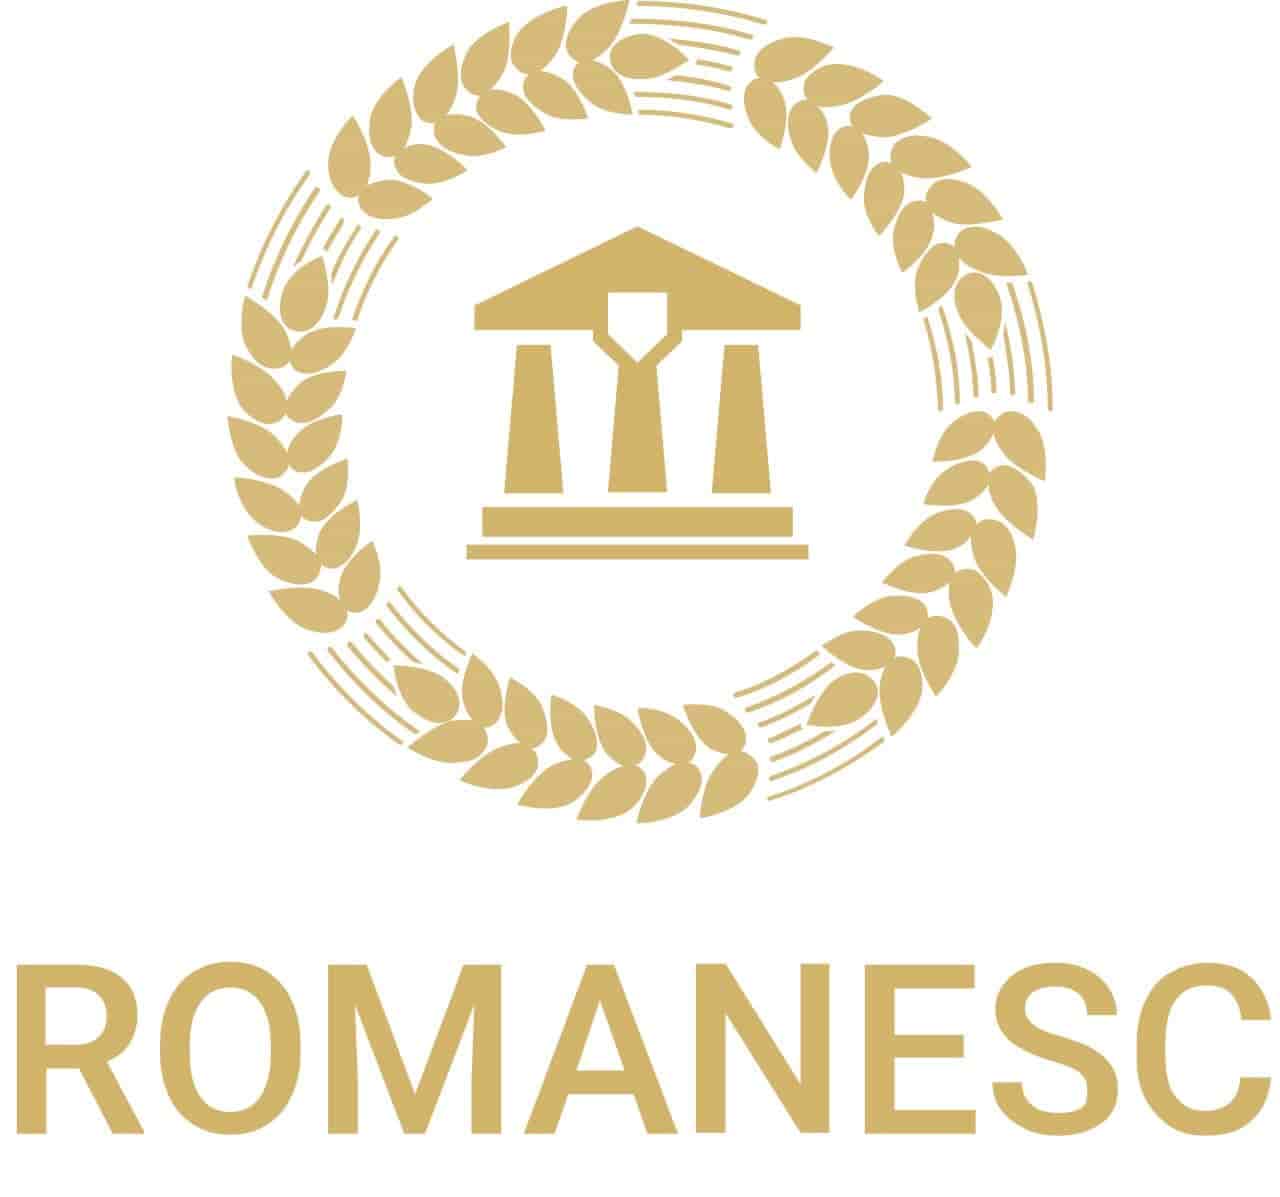 Romanesc: обзор компании и отзывы о ней